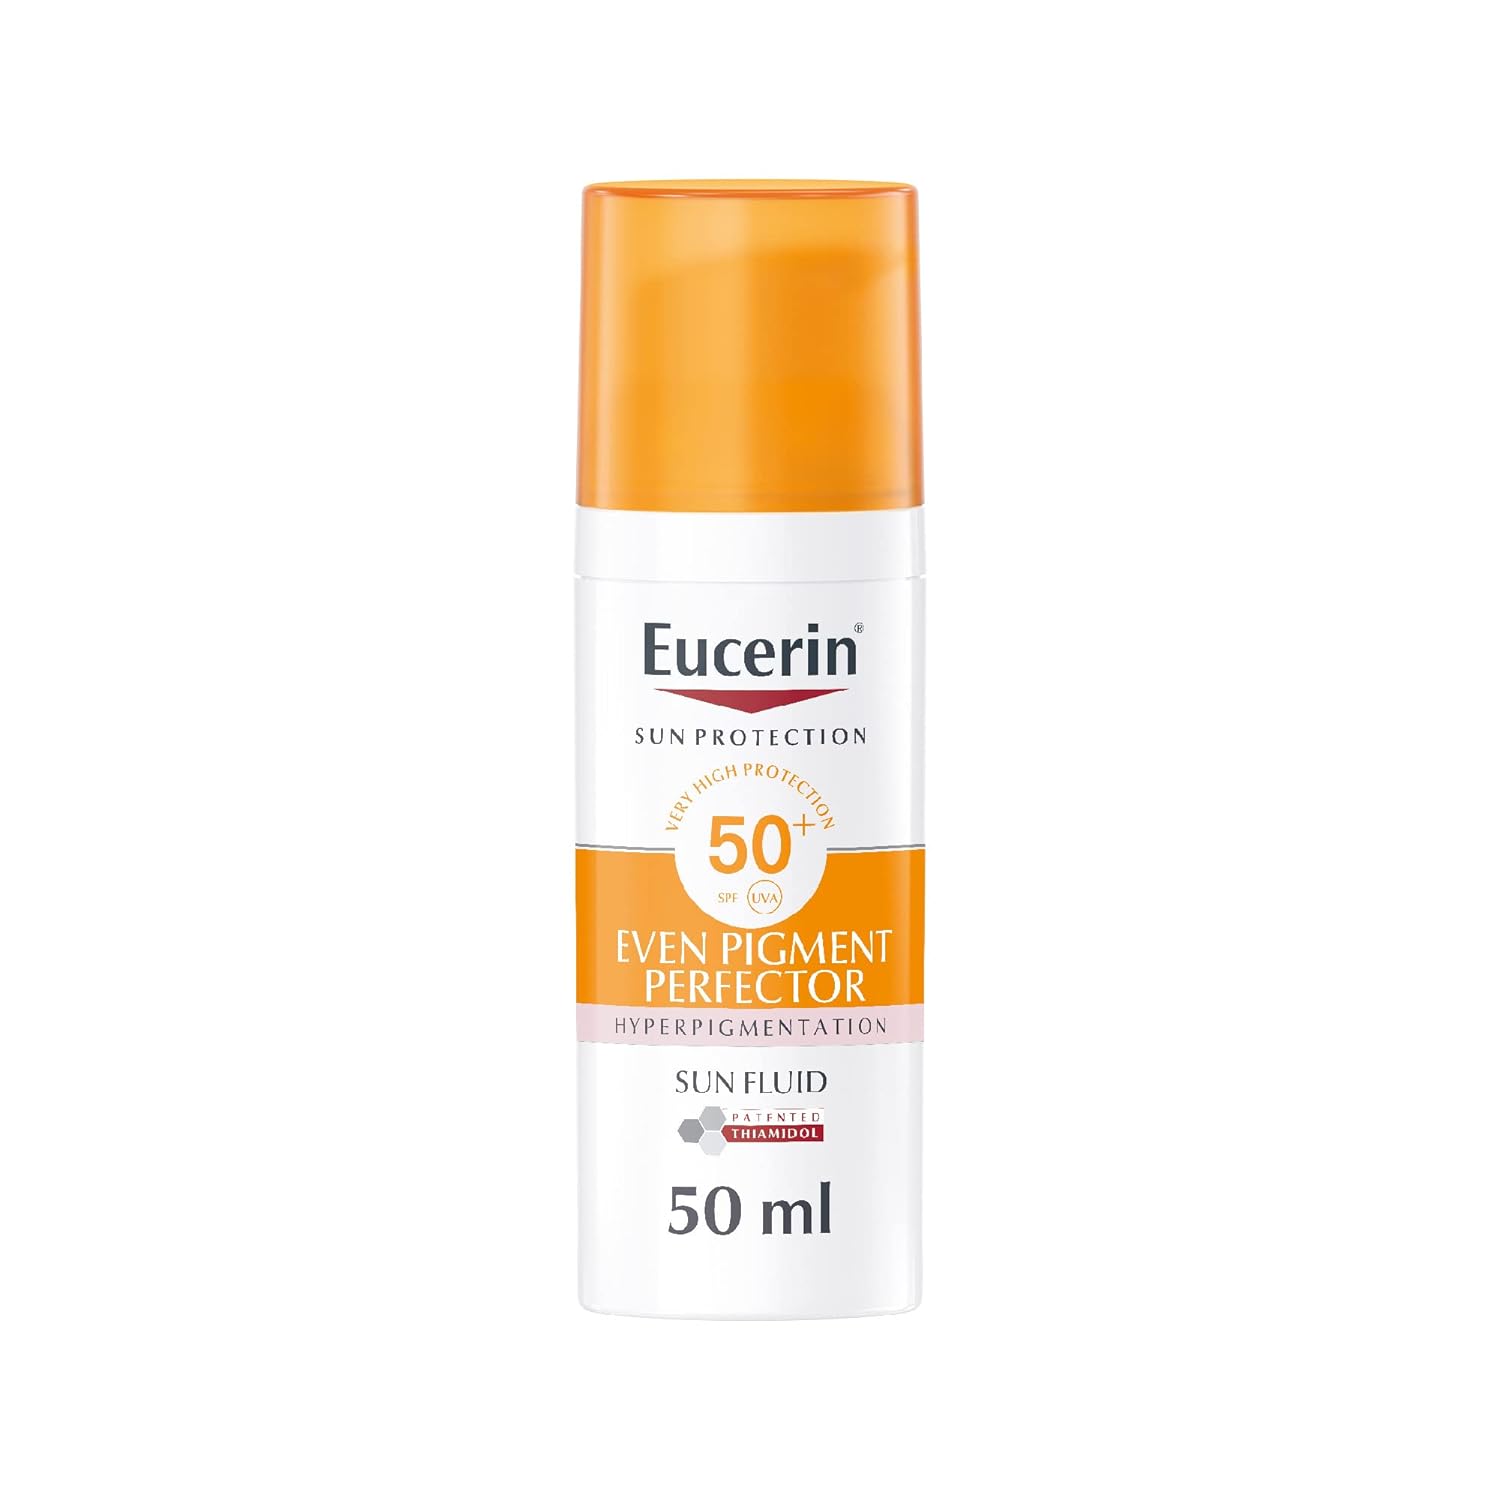 Eucerin Sun Fluid Pigment Control SPF 50 50 ml